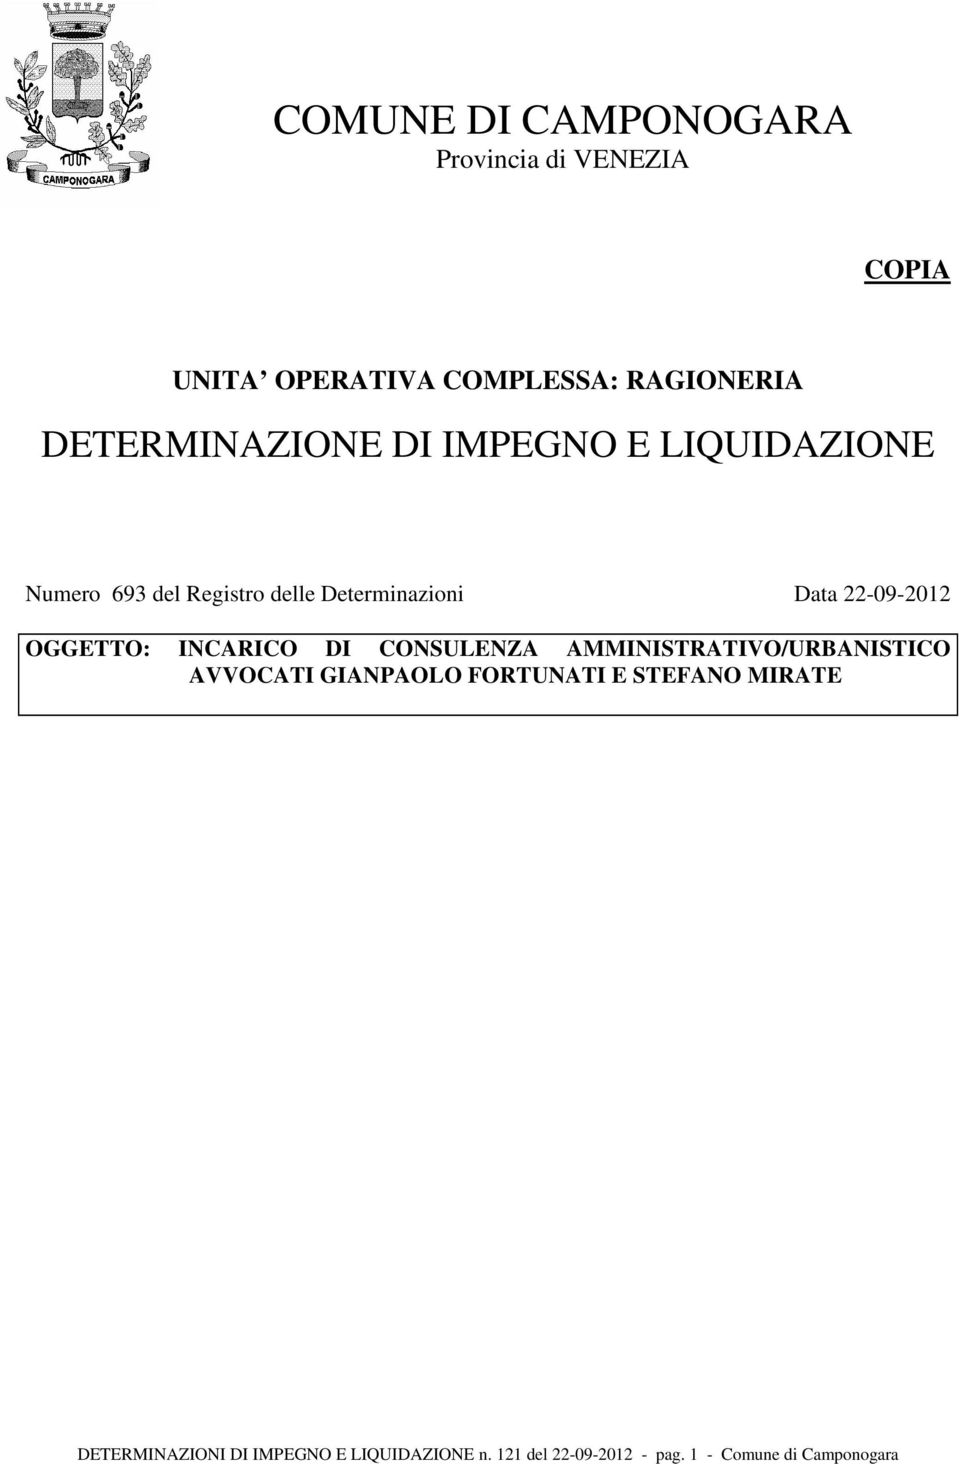 22-09-2012 OGGETTO: INCARICO DI CONSULENZA AMMINISTRATIVO/URBANISTICO AVVOCATI GIANPAOLO